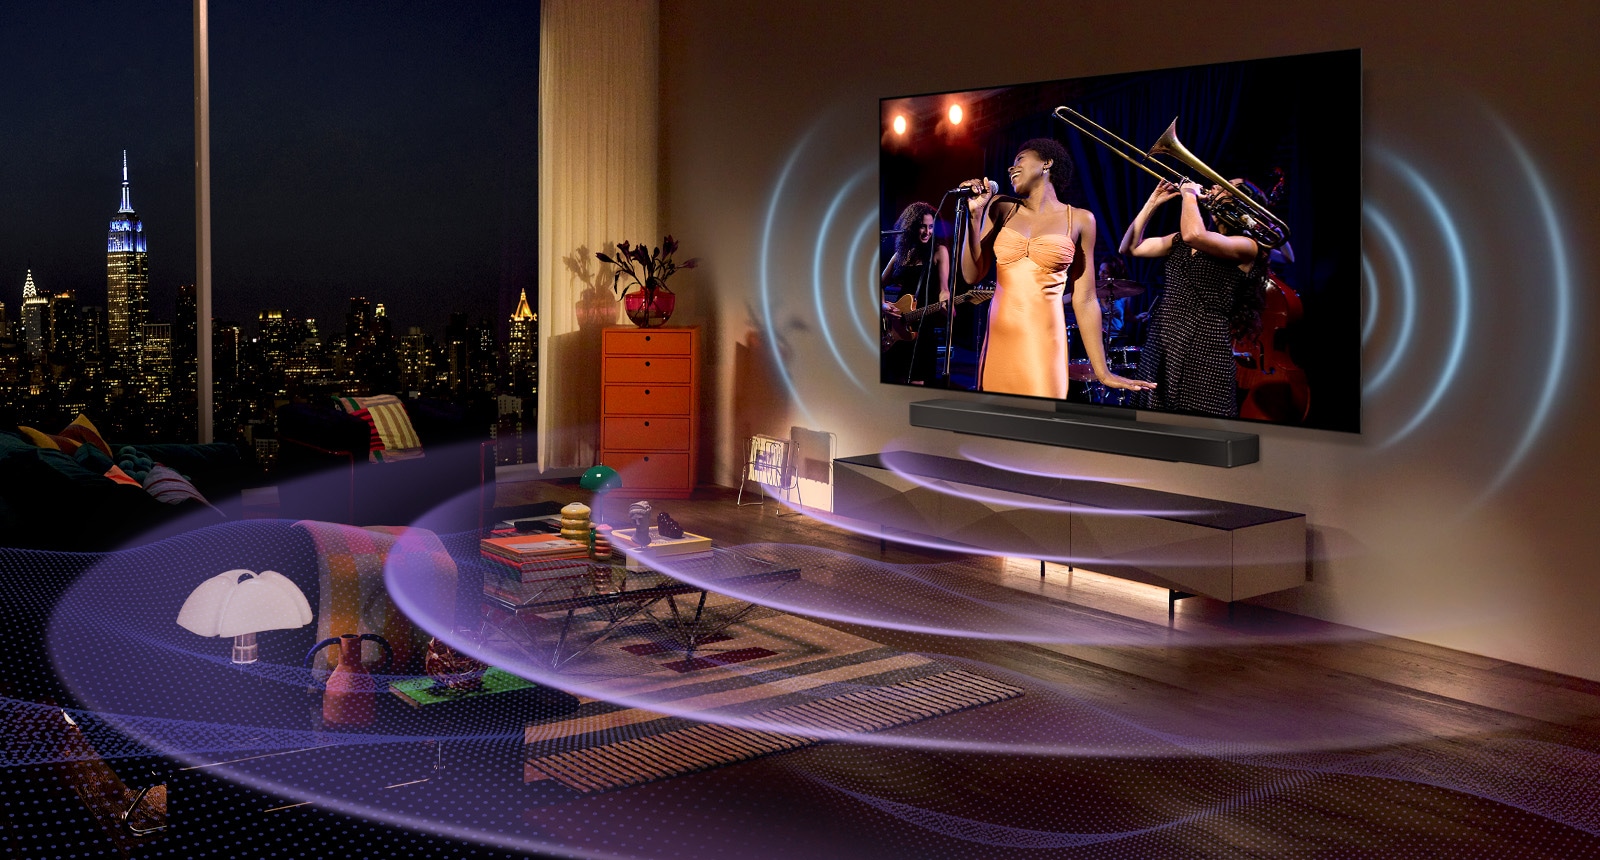 صورة لتلفزيون LG OLED في غرفة تعرض حفلًا موسيقيًا. الخطوط المنحنية الزرقاء التي تصور صوت التلفزيون والخطوط المنحنية الأرجوانية التي تعبر عن صوت Soundbar تملأ المساحة.